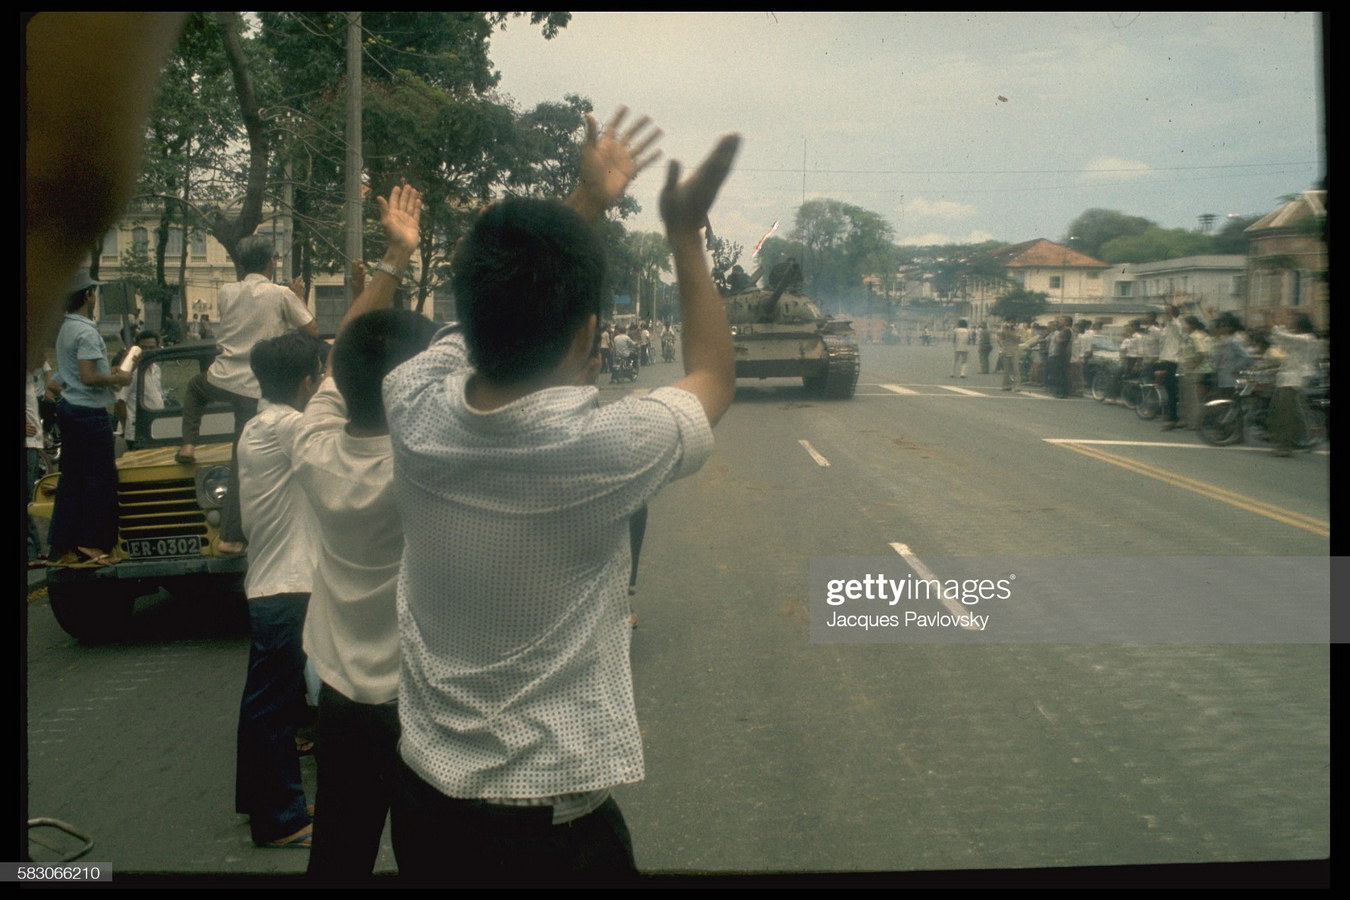 Chùm ảnh: Sài Gòn ngày 30/4/1975 qua ống kính Jacques Pavlovsky